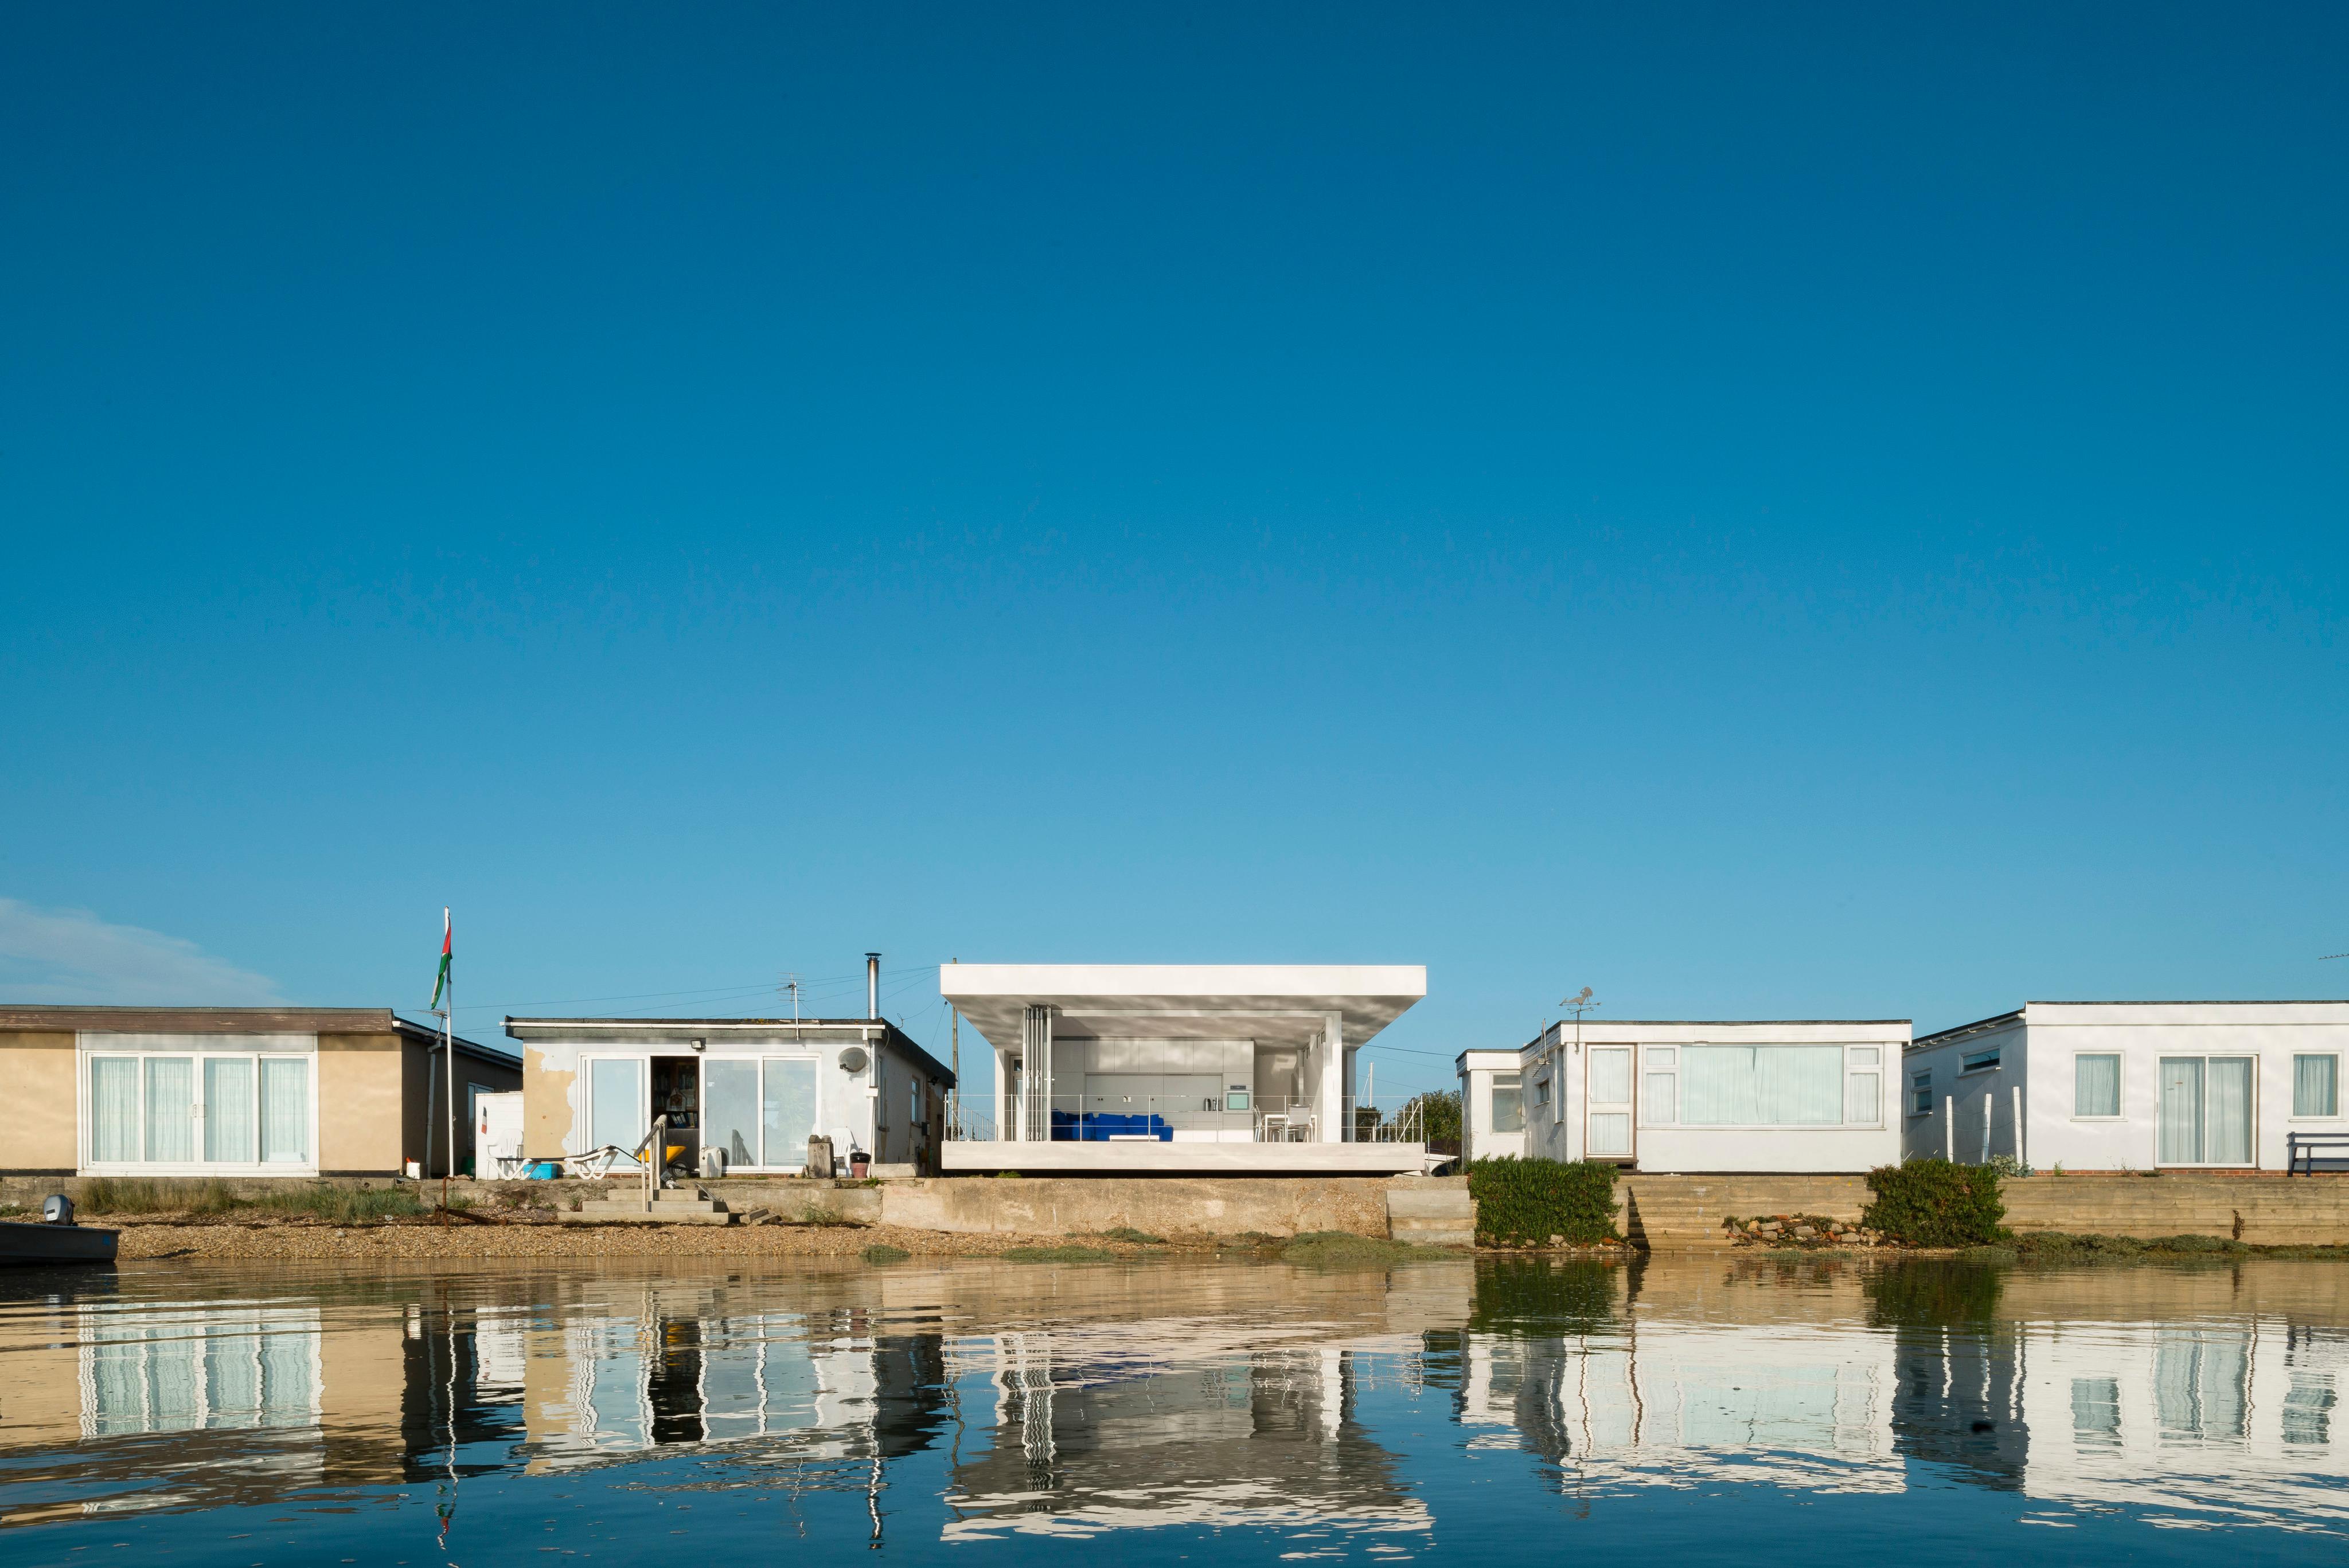 Schwimmende Häuser #ferienhaus ©Manser Medal/Jim Stephenson, Architekt: John Young & MELOY architects